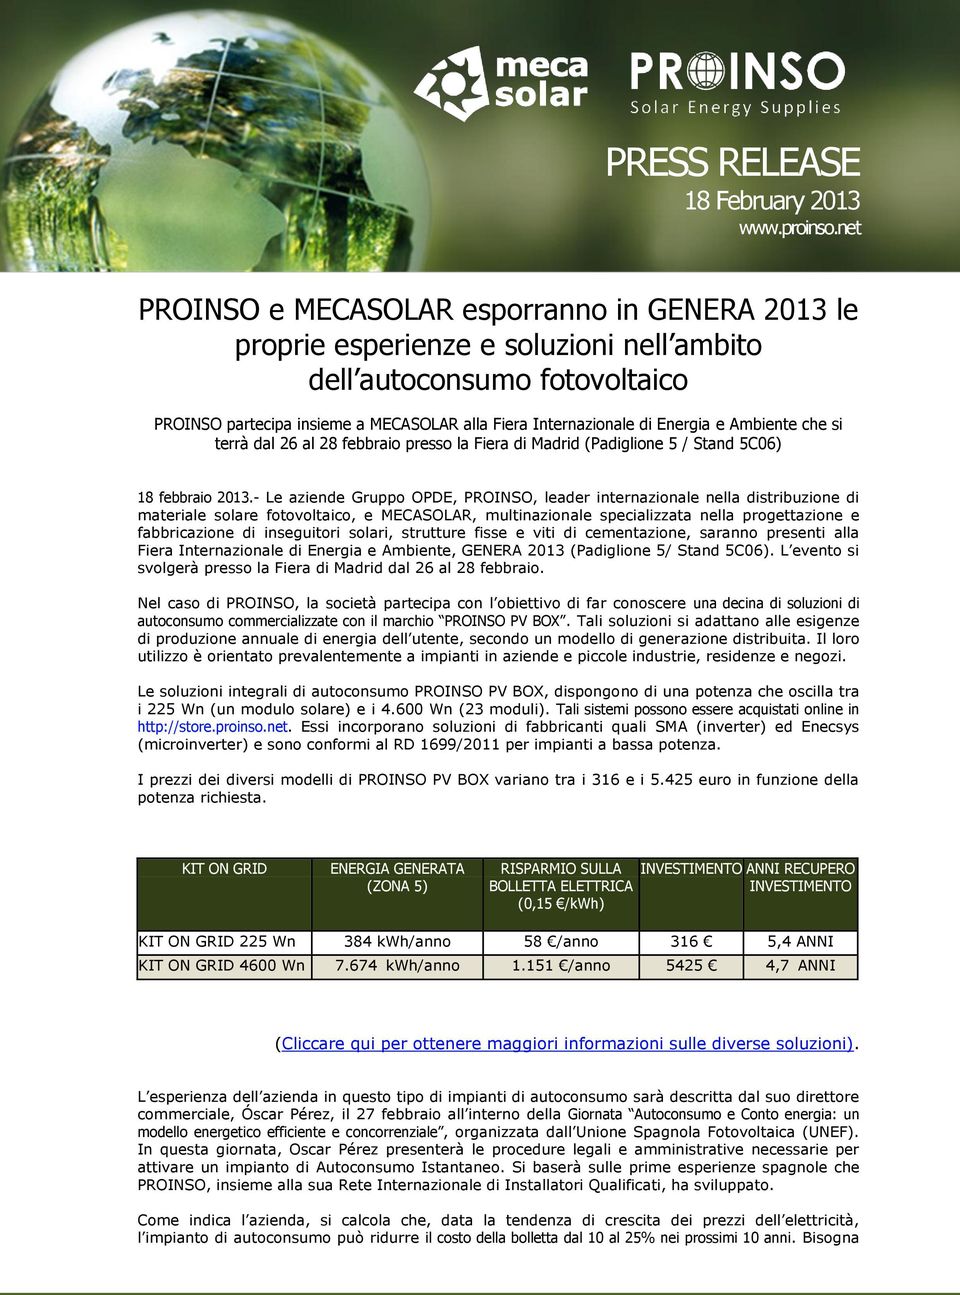 Energia e Ambiente che si terrà dal 26 al 28 febbraio presso la Fiera di Madrid (Padiglione 5 / Stand 5C06) 18 febbraio 2013.